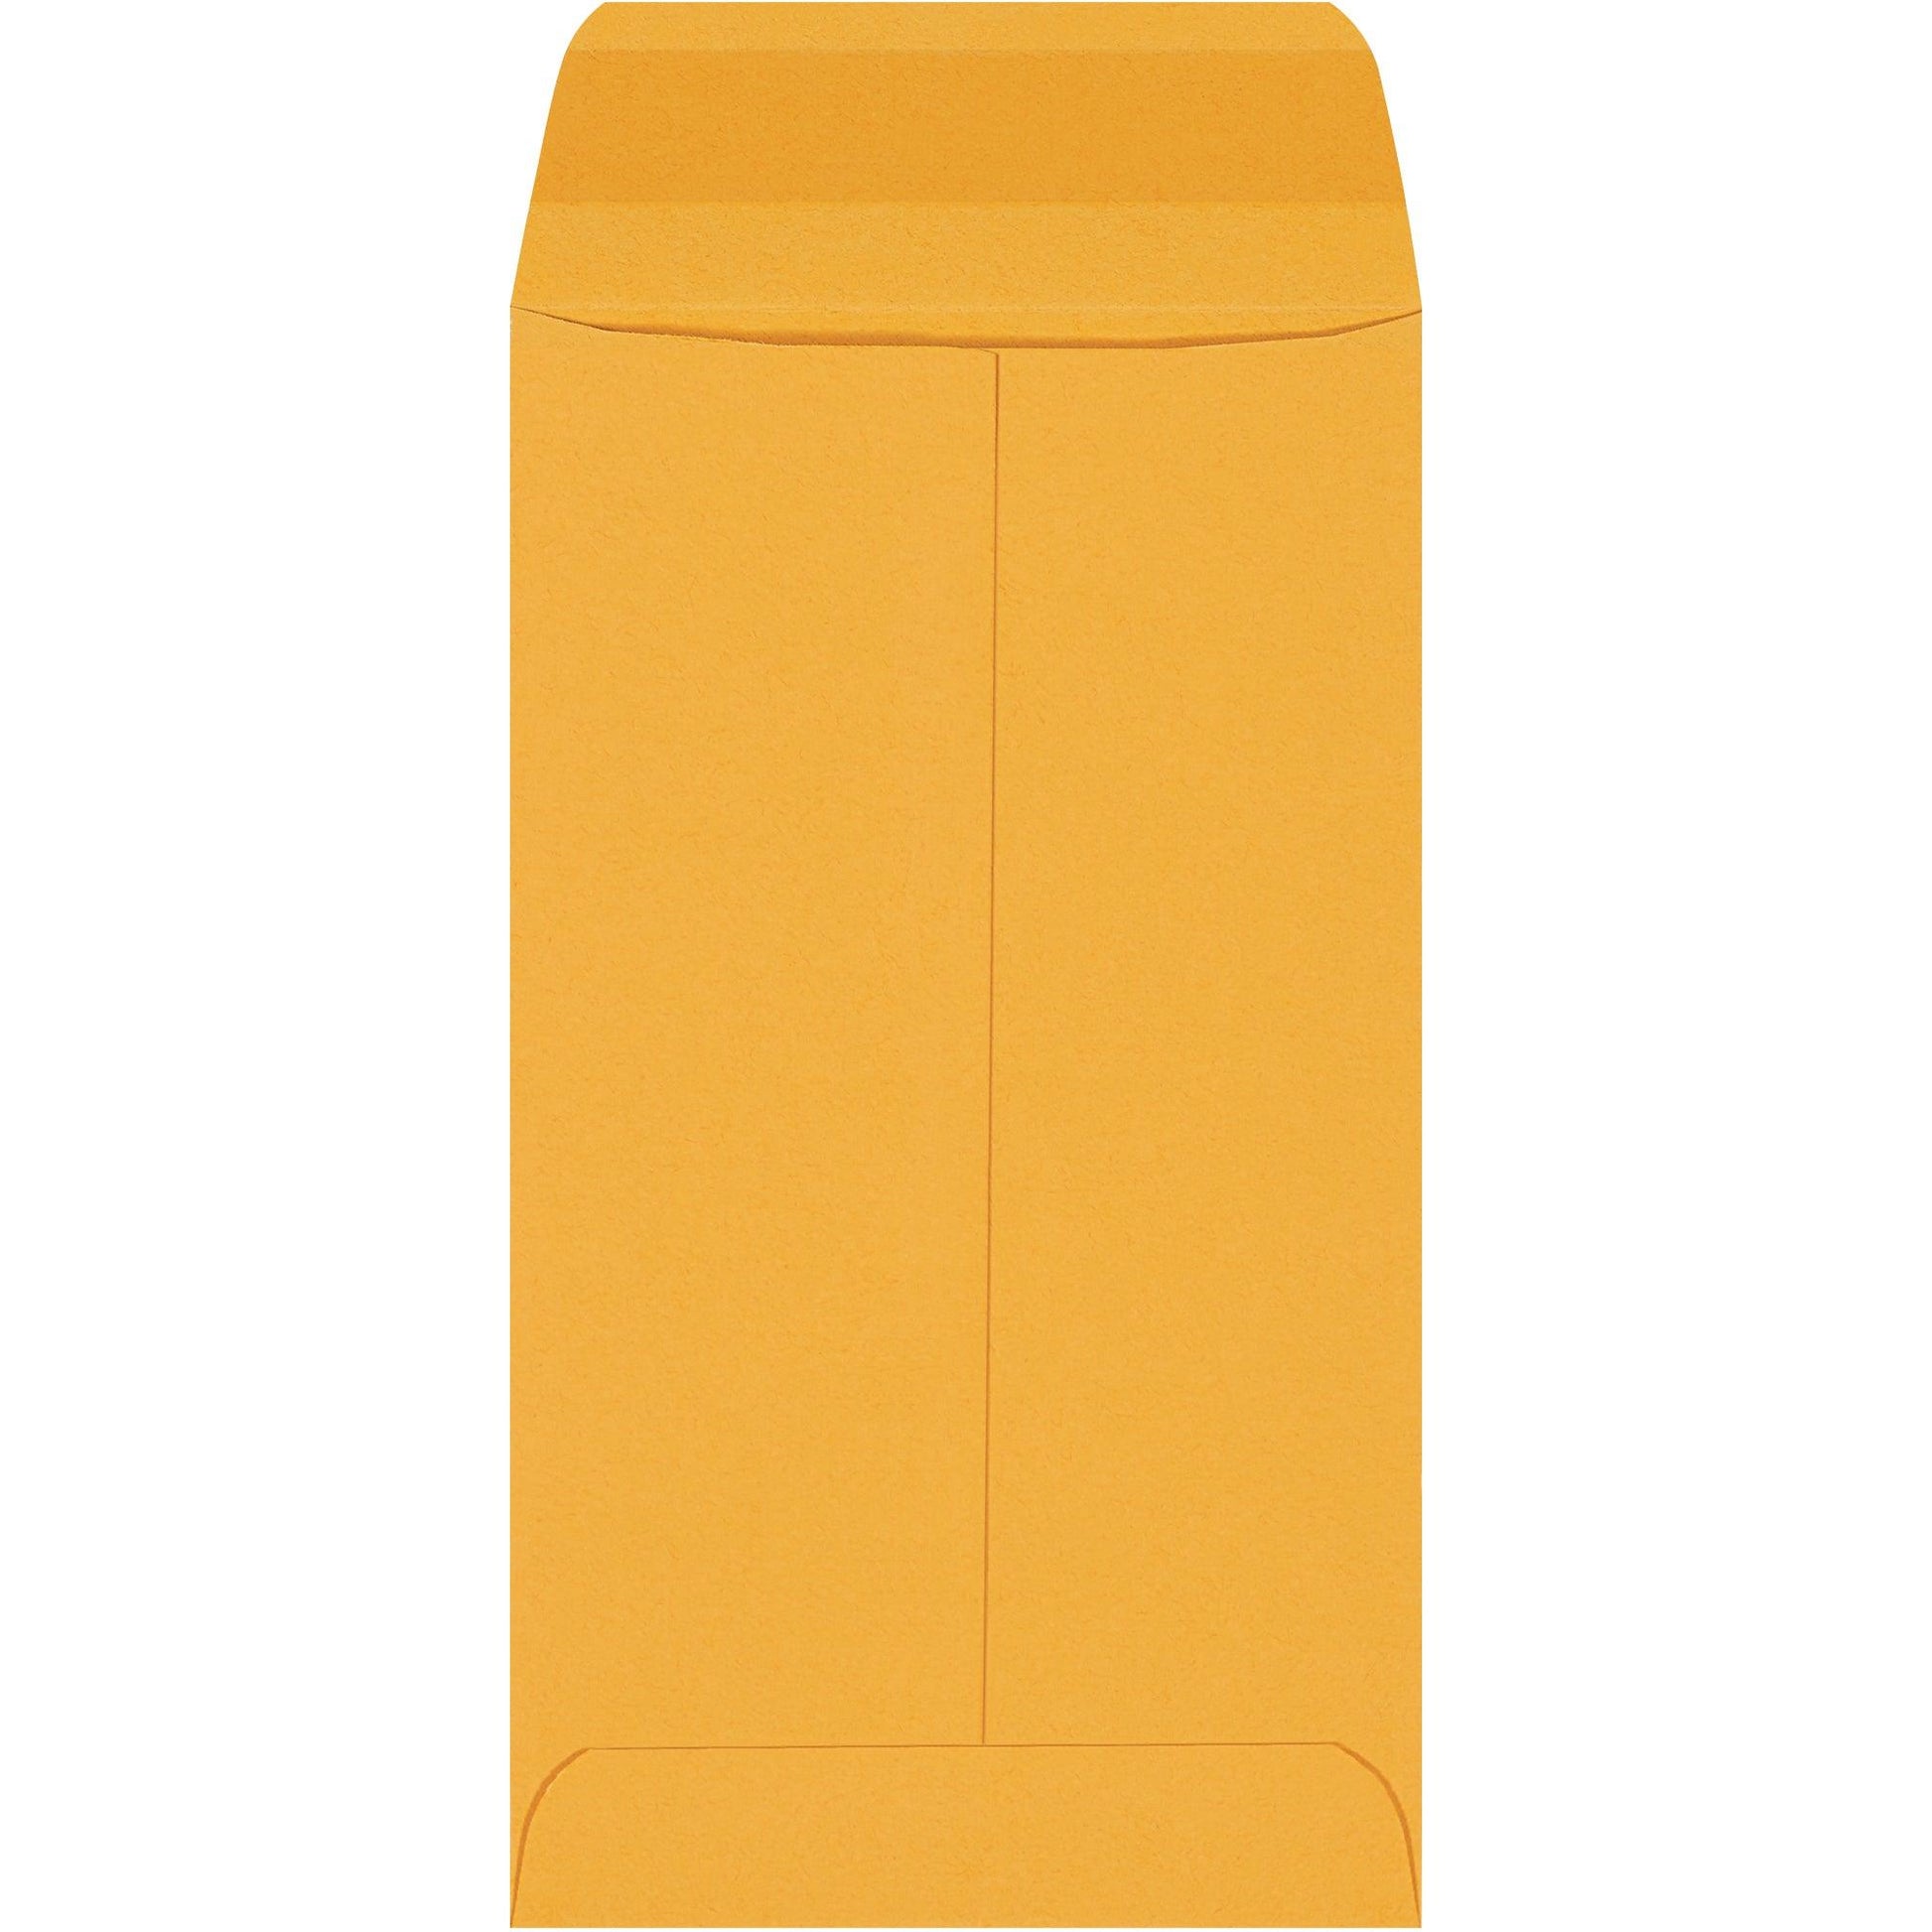 3 3/8 x 6" Kraft Gummed Envelopes - EN1038